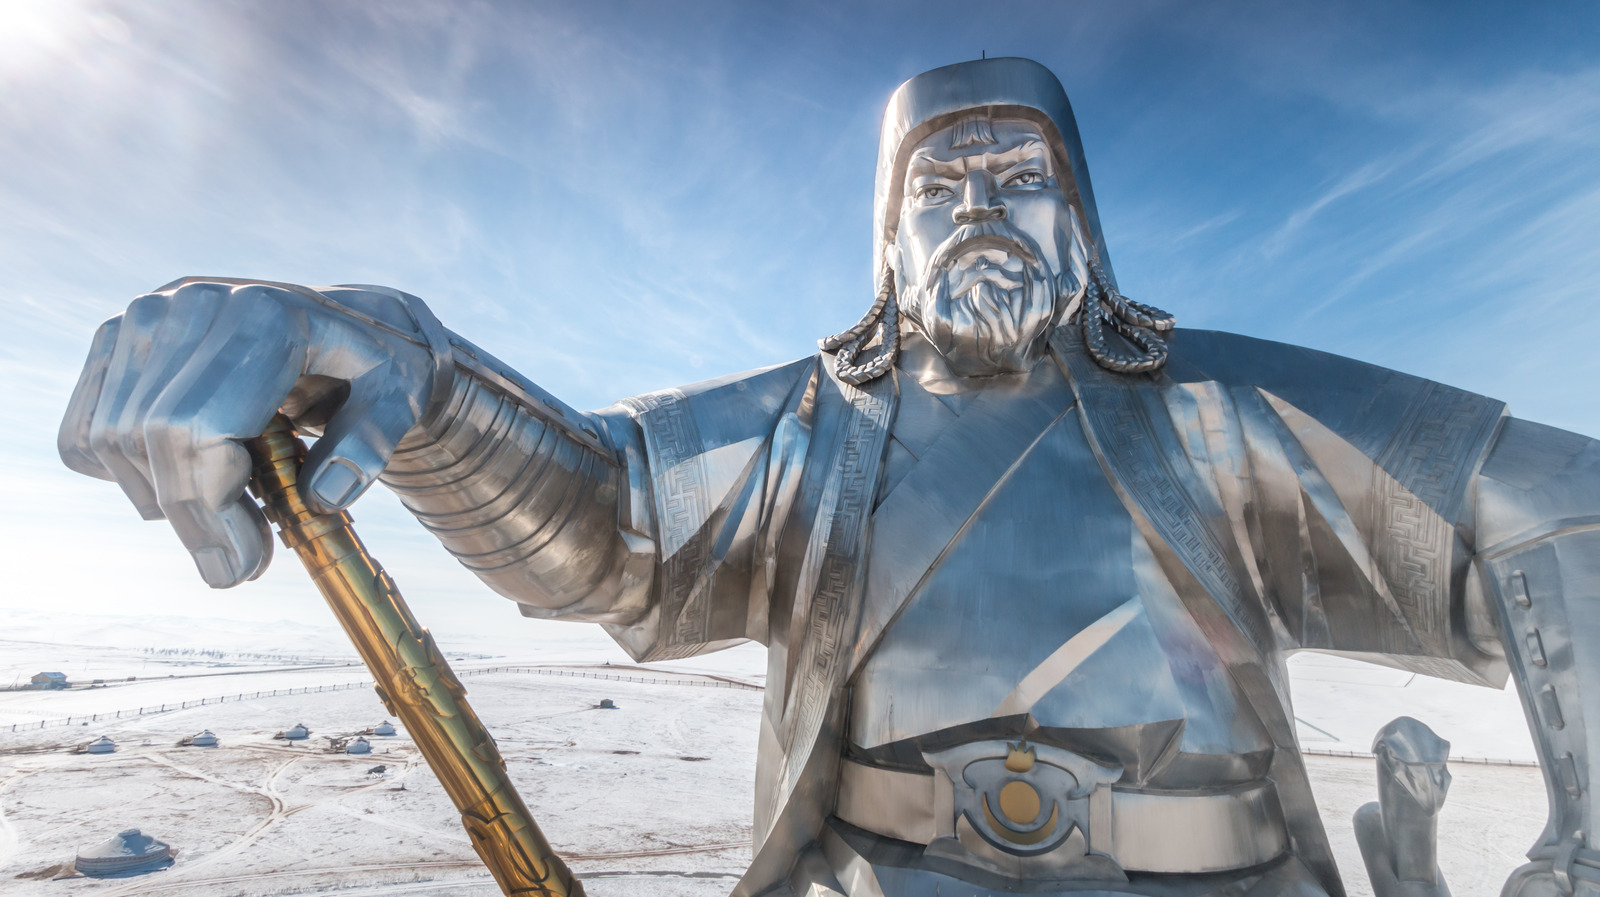 Как сделать хану. Памятник Чингисхану в Монголии.